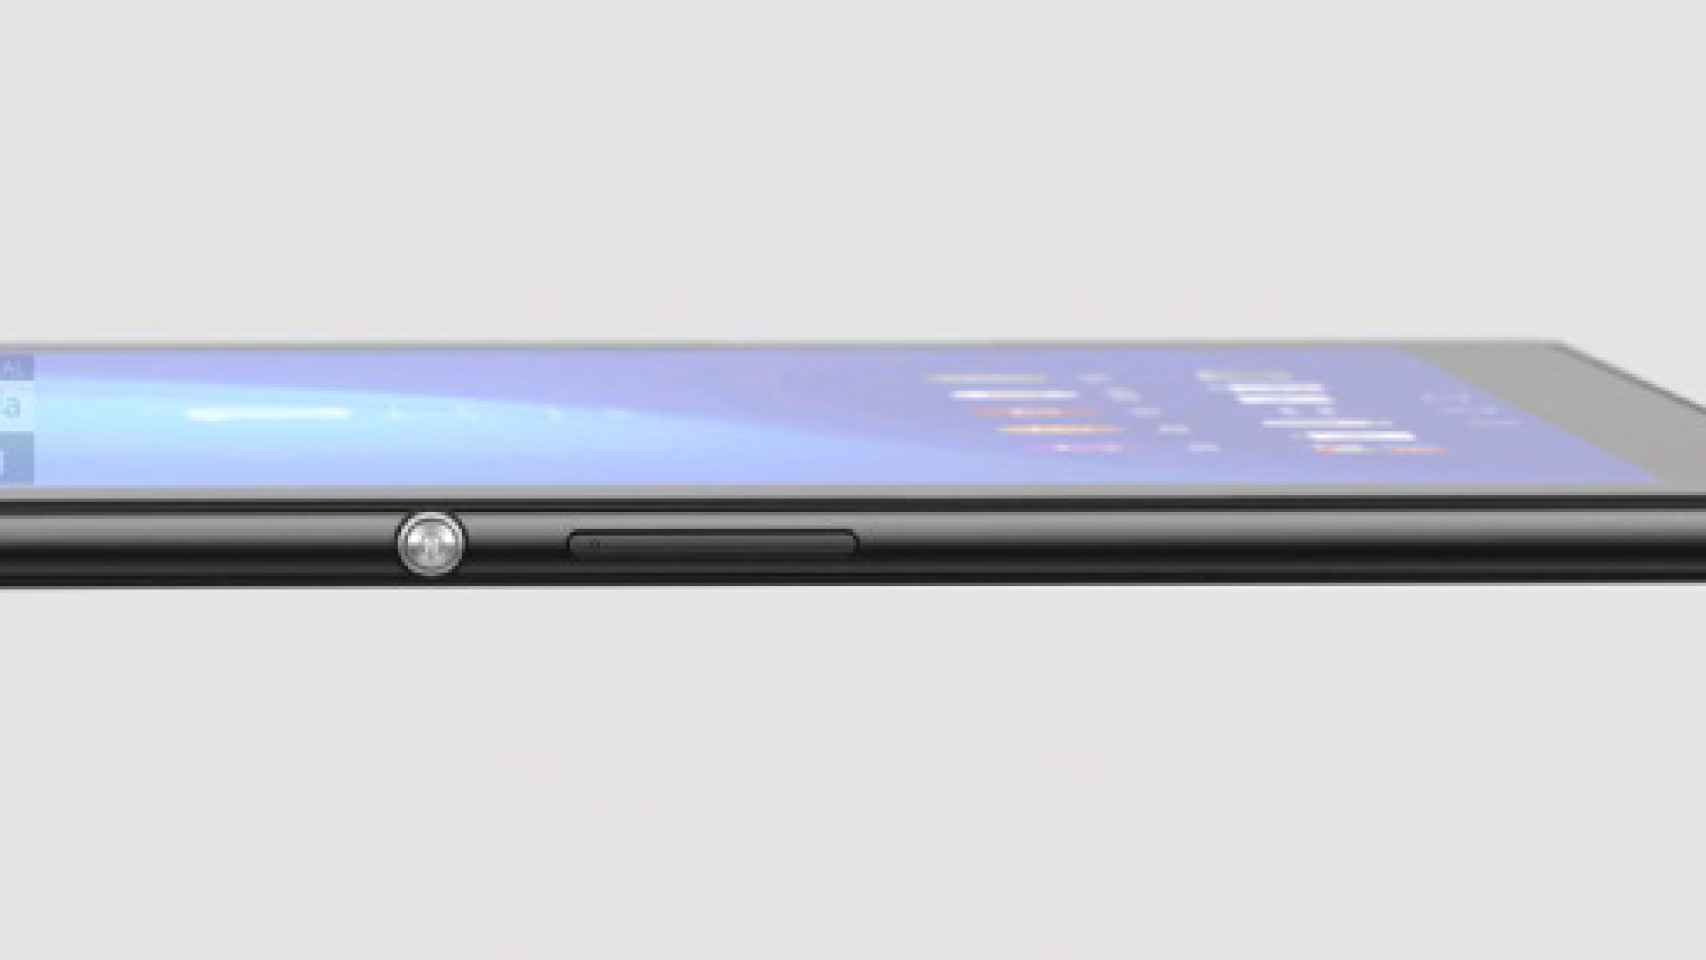 Filtrada una imagen de la Sony Xperia Z4 Tablet con pantalla 2K